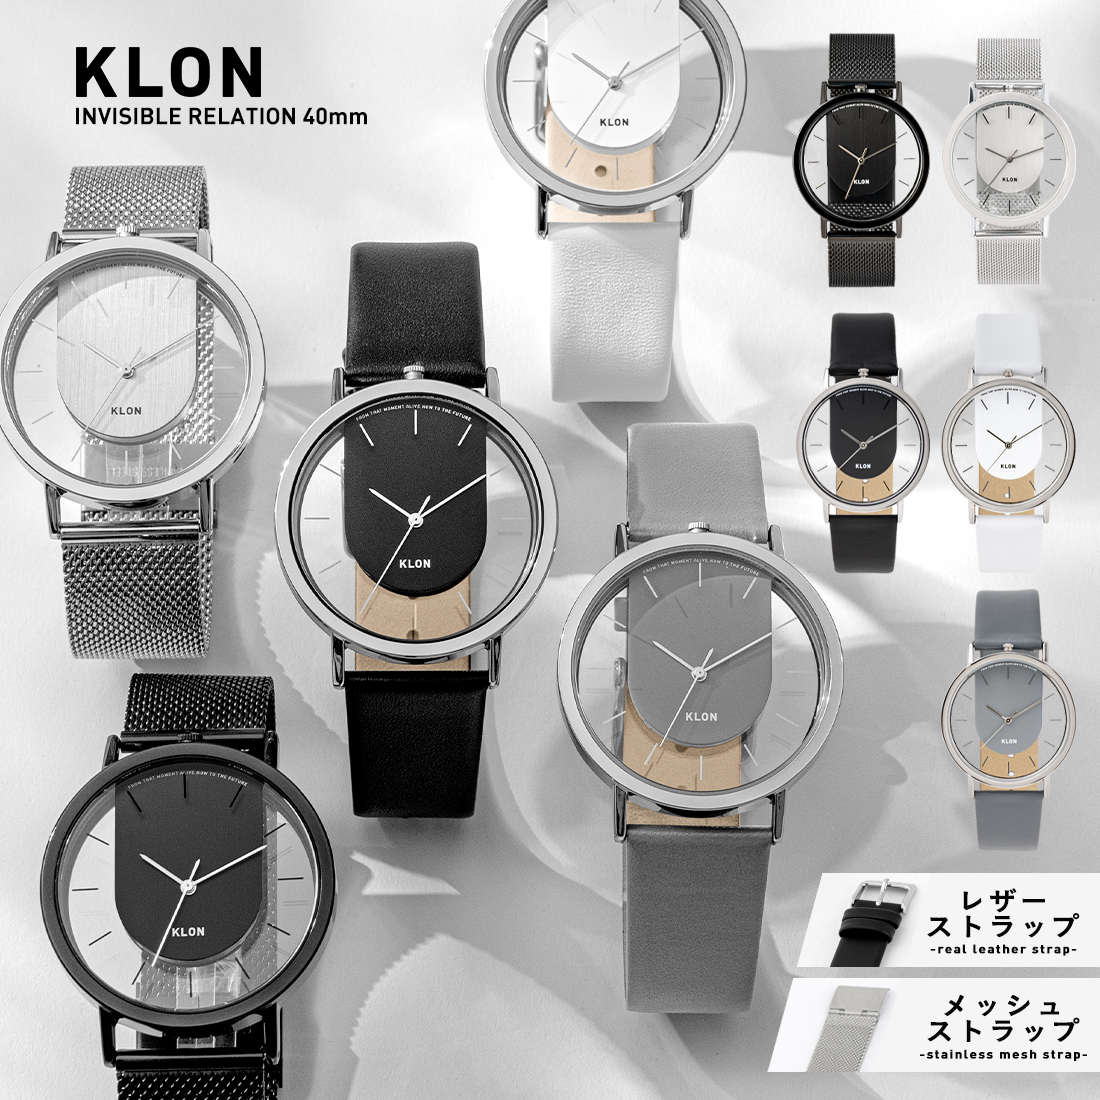 腕時計 モノトーン ビジネス レザー ステンレス ベルト シンプル ペア腕時計 お揃い ペア カップル 記念日 プレゼント 大人 ギフトメンズ レディース オールジェンダー ジェンダーレス ブランド KLON INVISIBLE RELATION 40mm画像